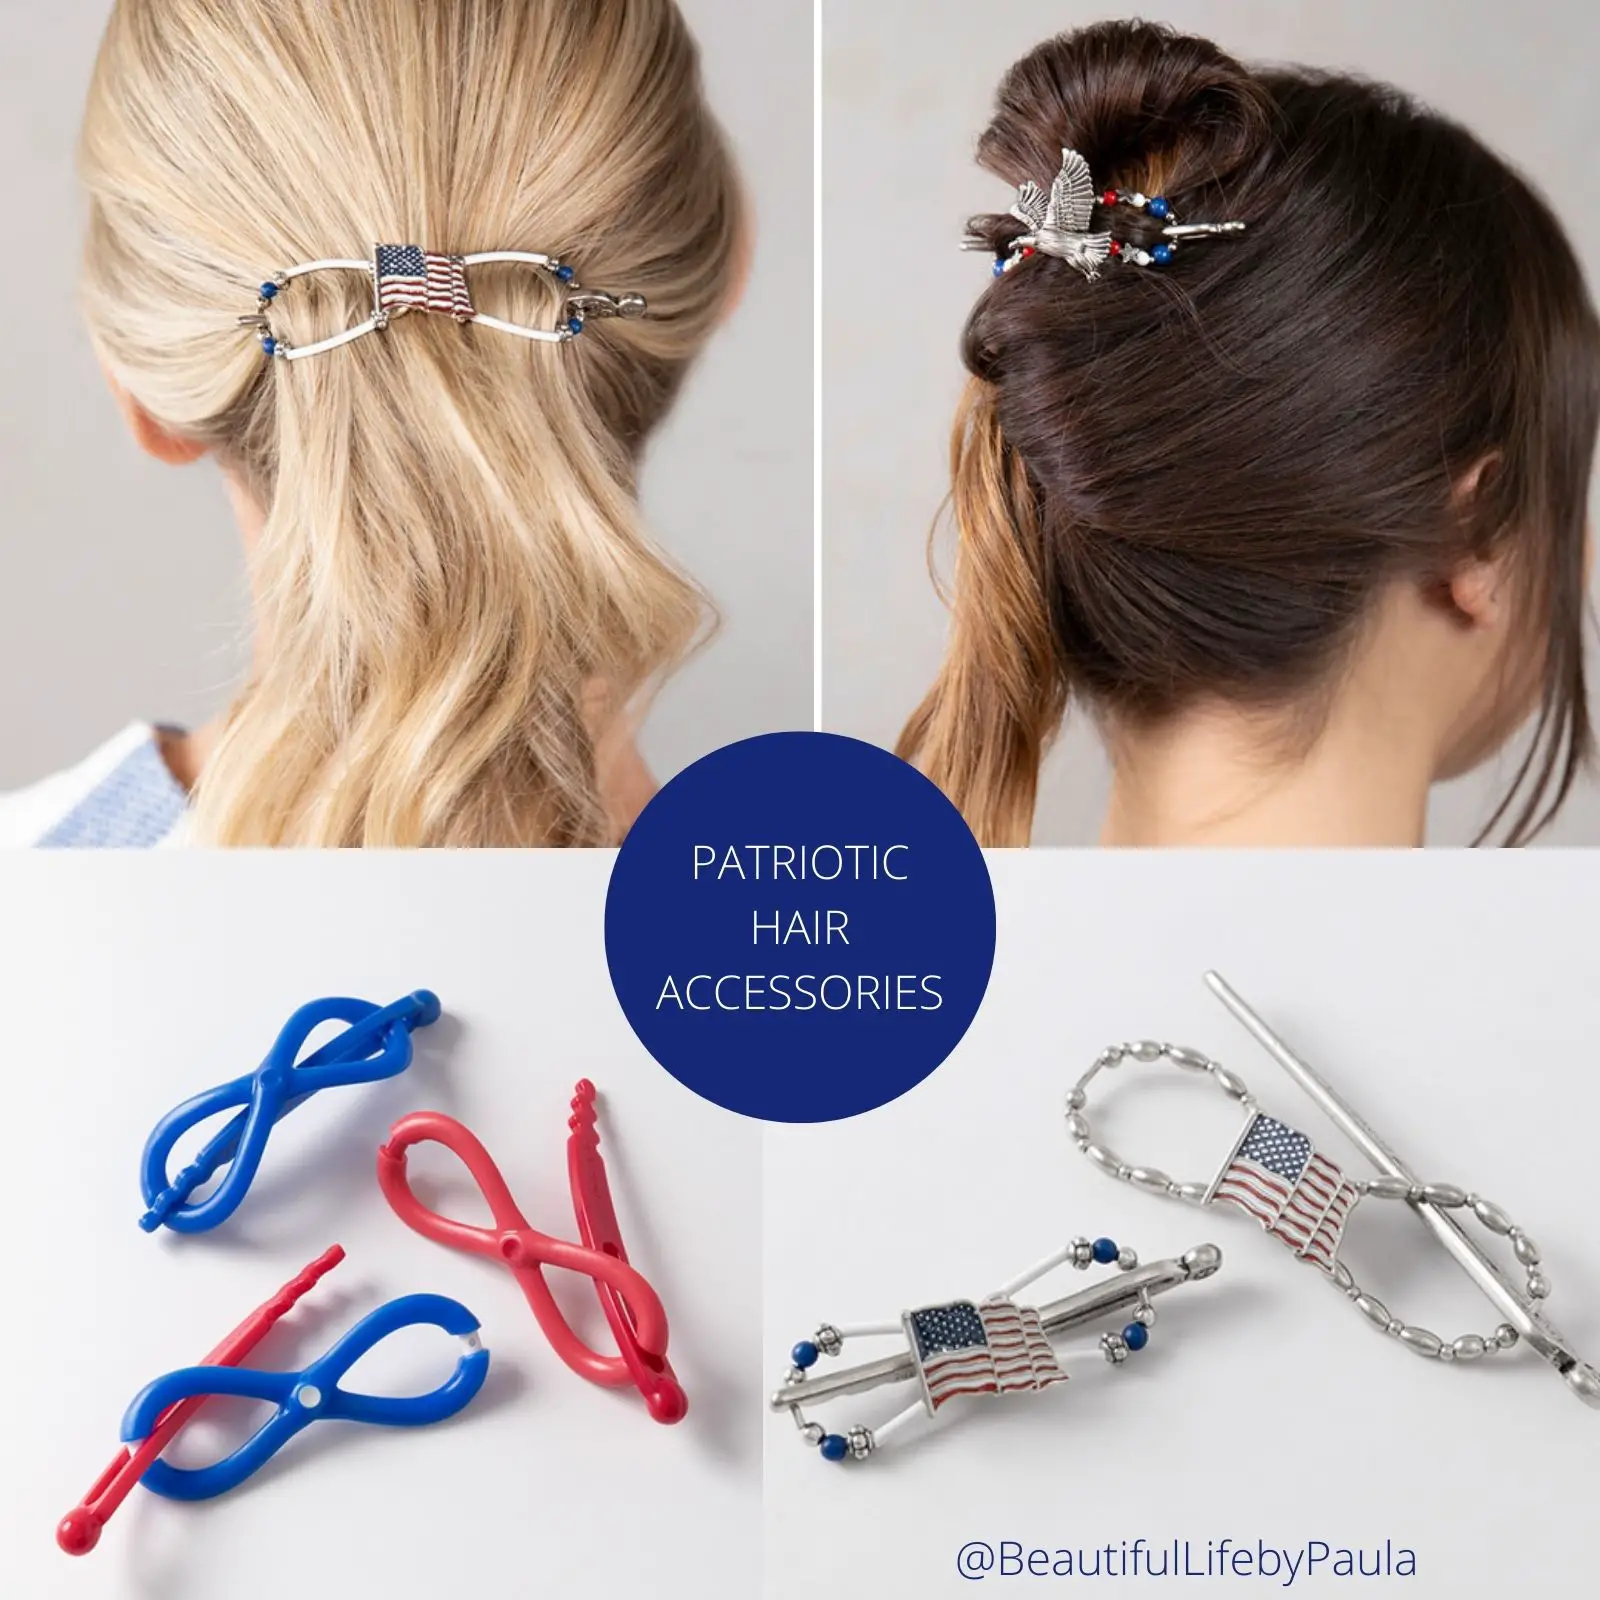 Patriotic hair accessories